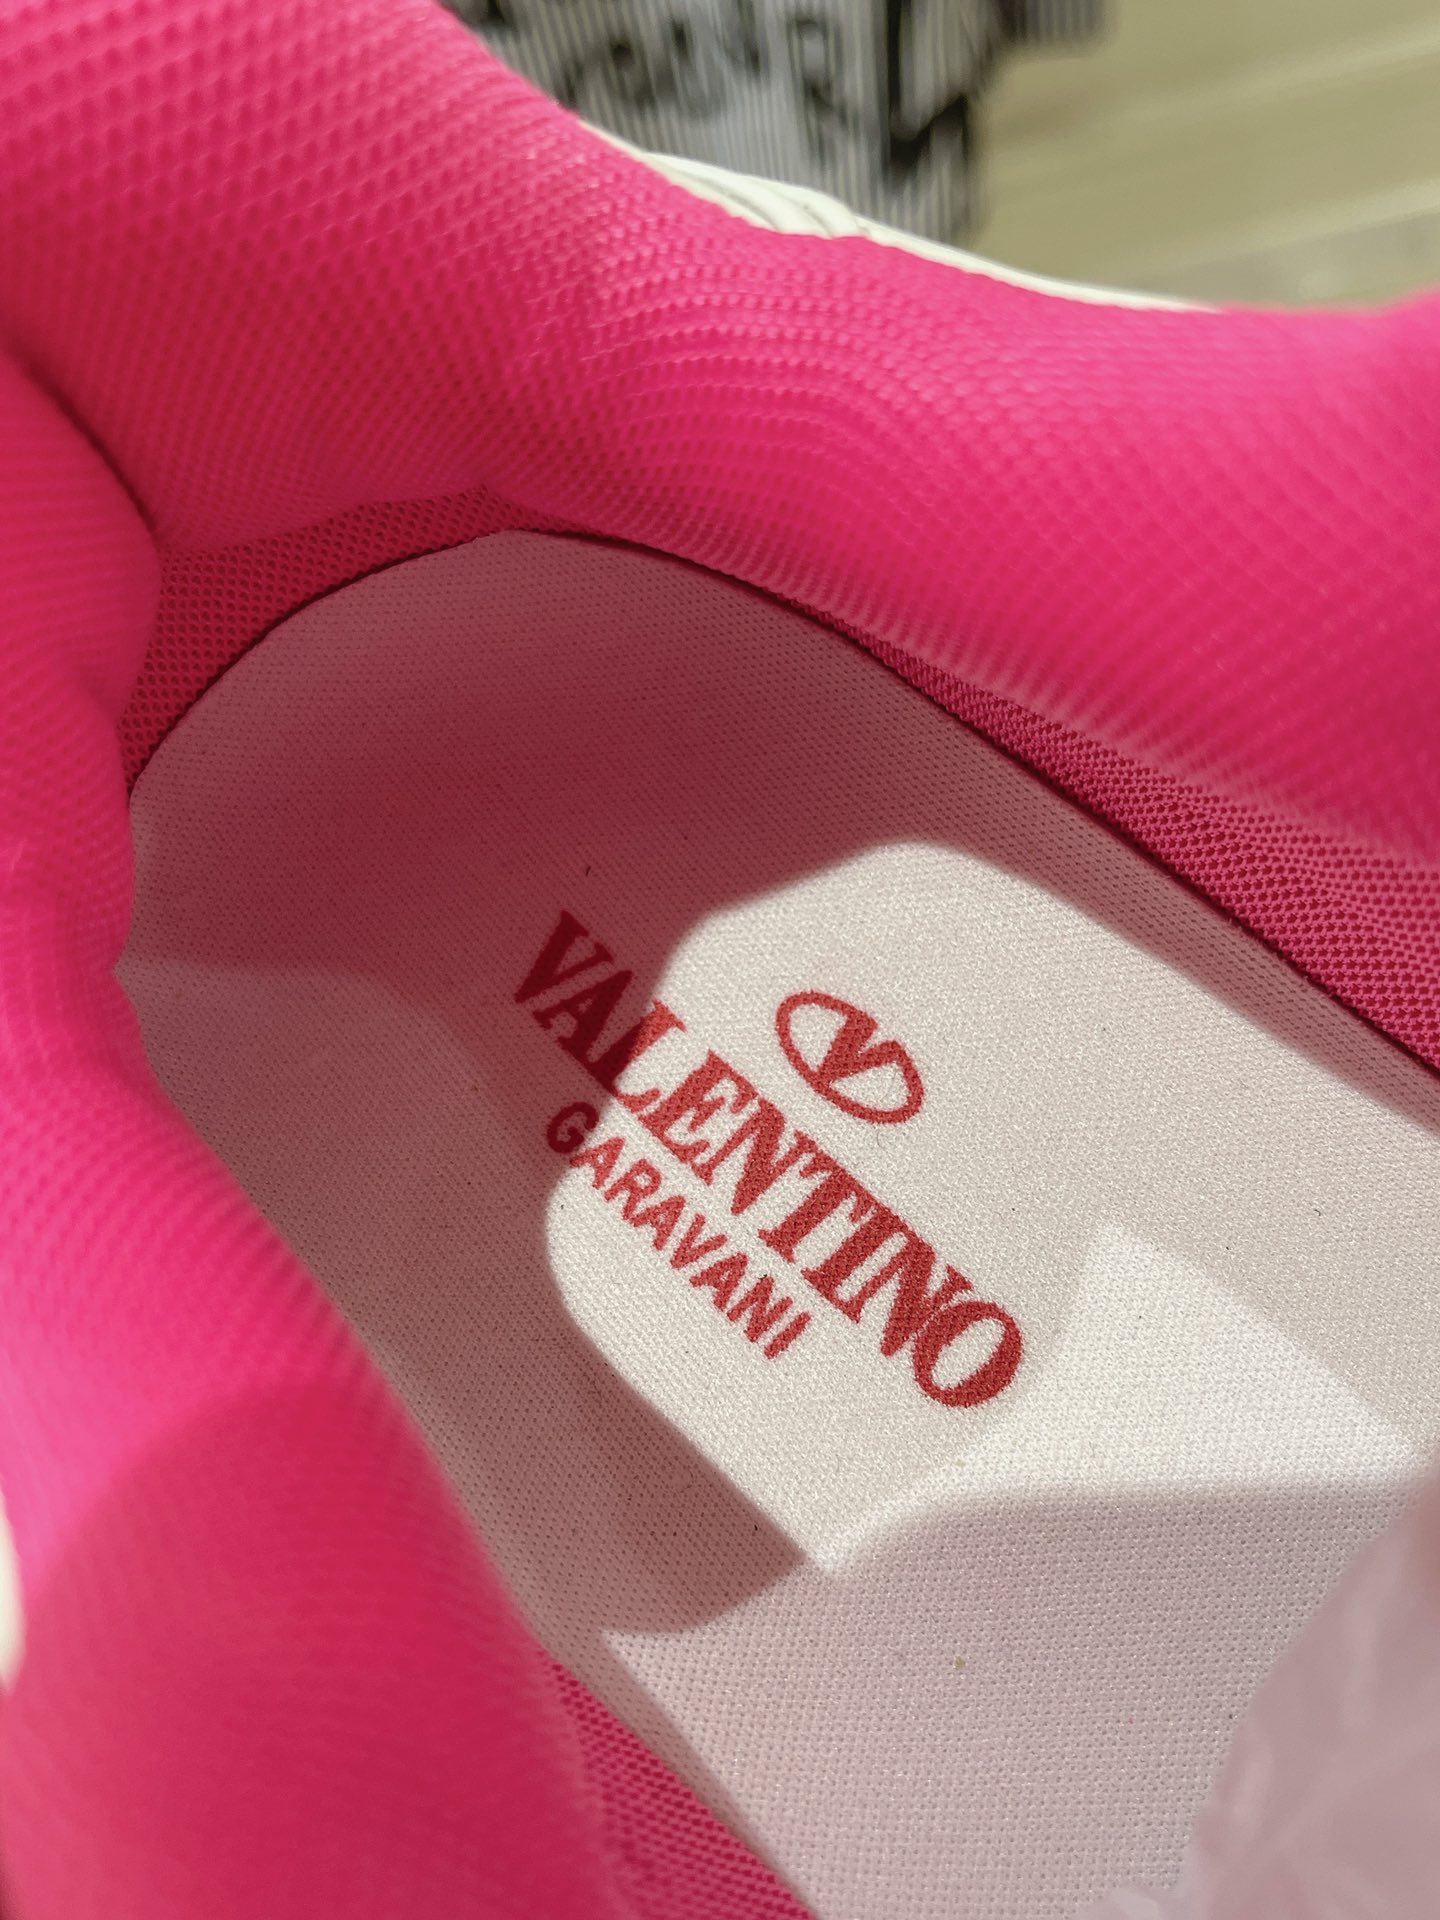 ヴァレンティノ 値上げスーパーコピー 軽量 通気性いい 防滑 ランニング カップシューズ ピンク_9